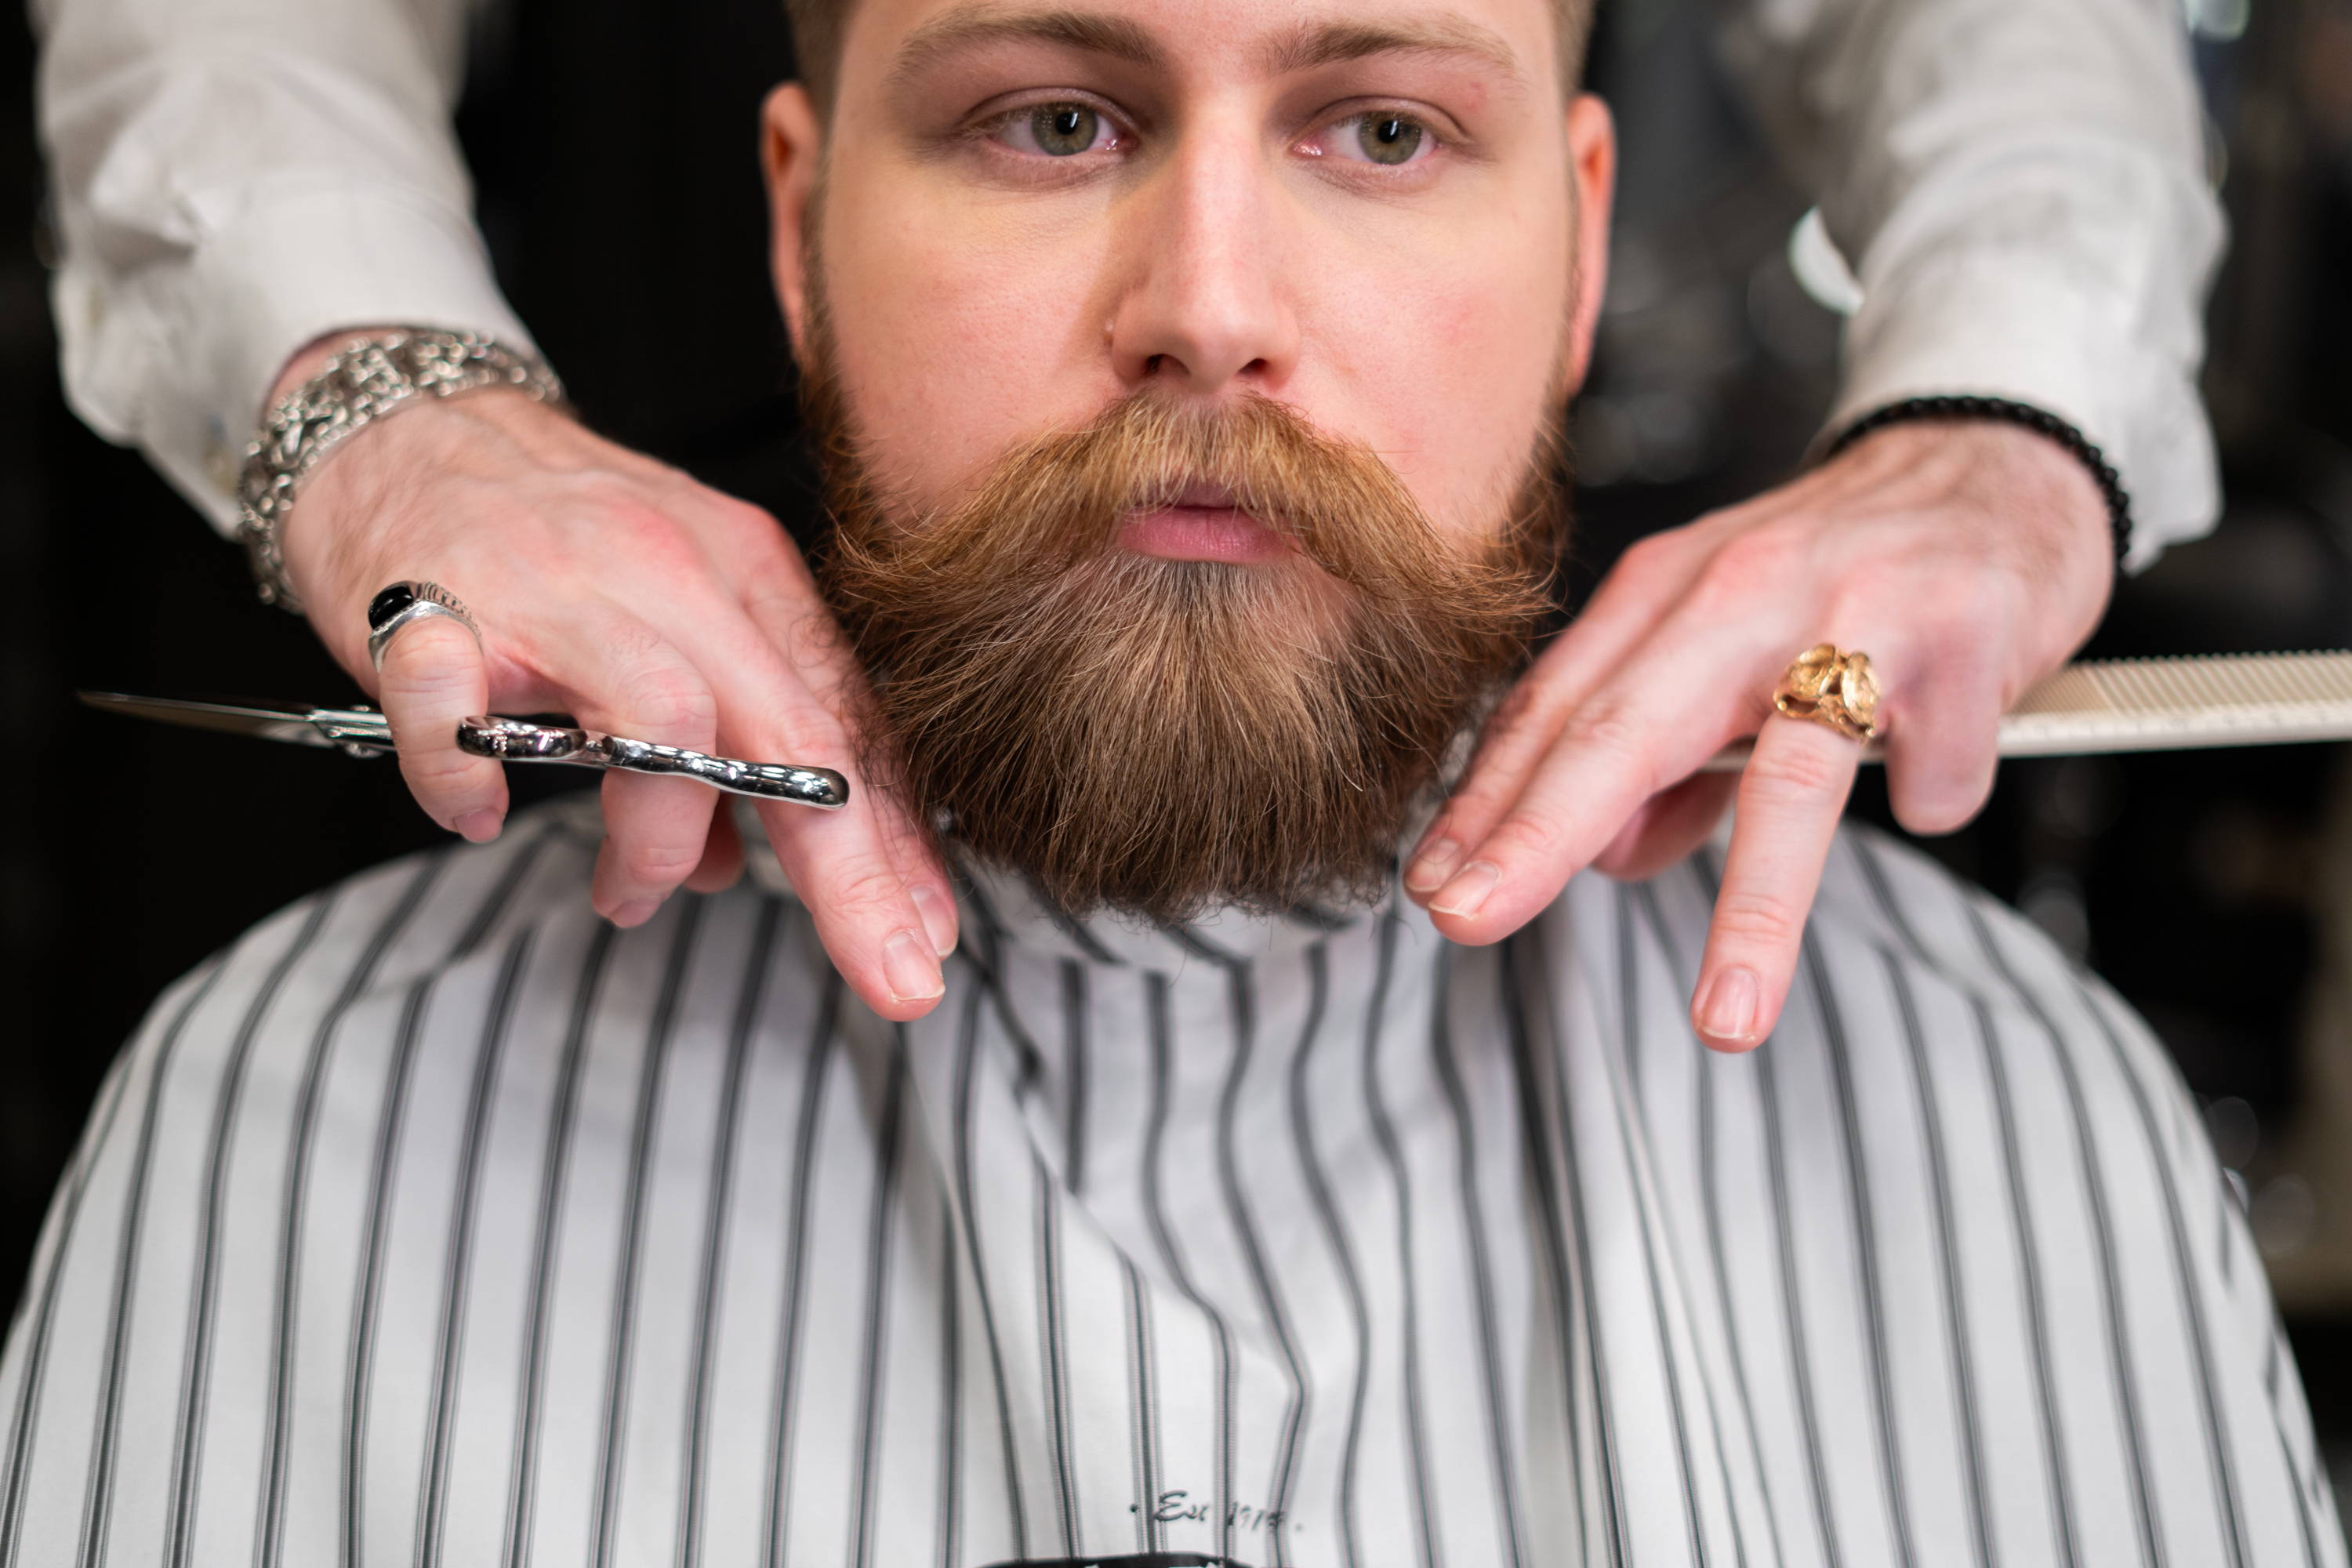 a man grooming his facial hair and beard